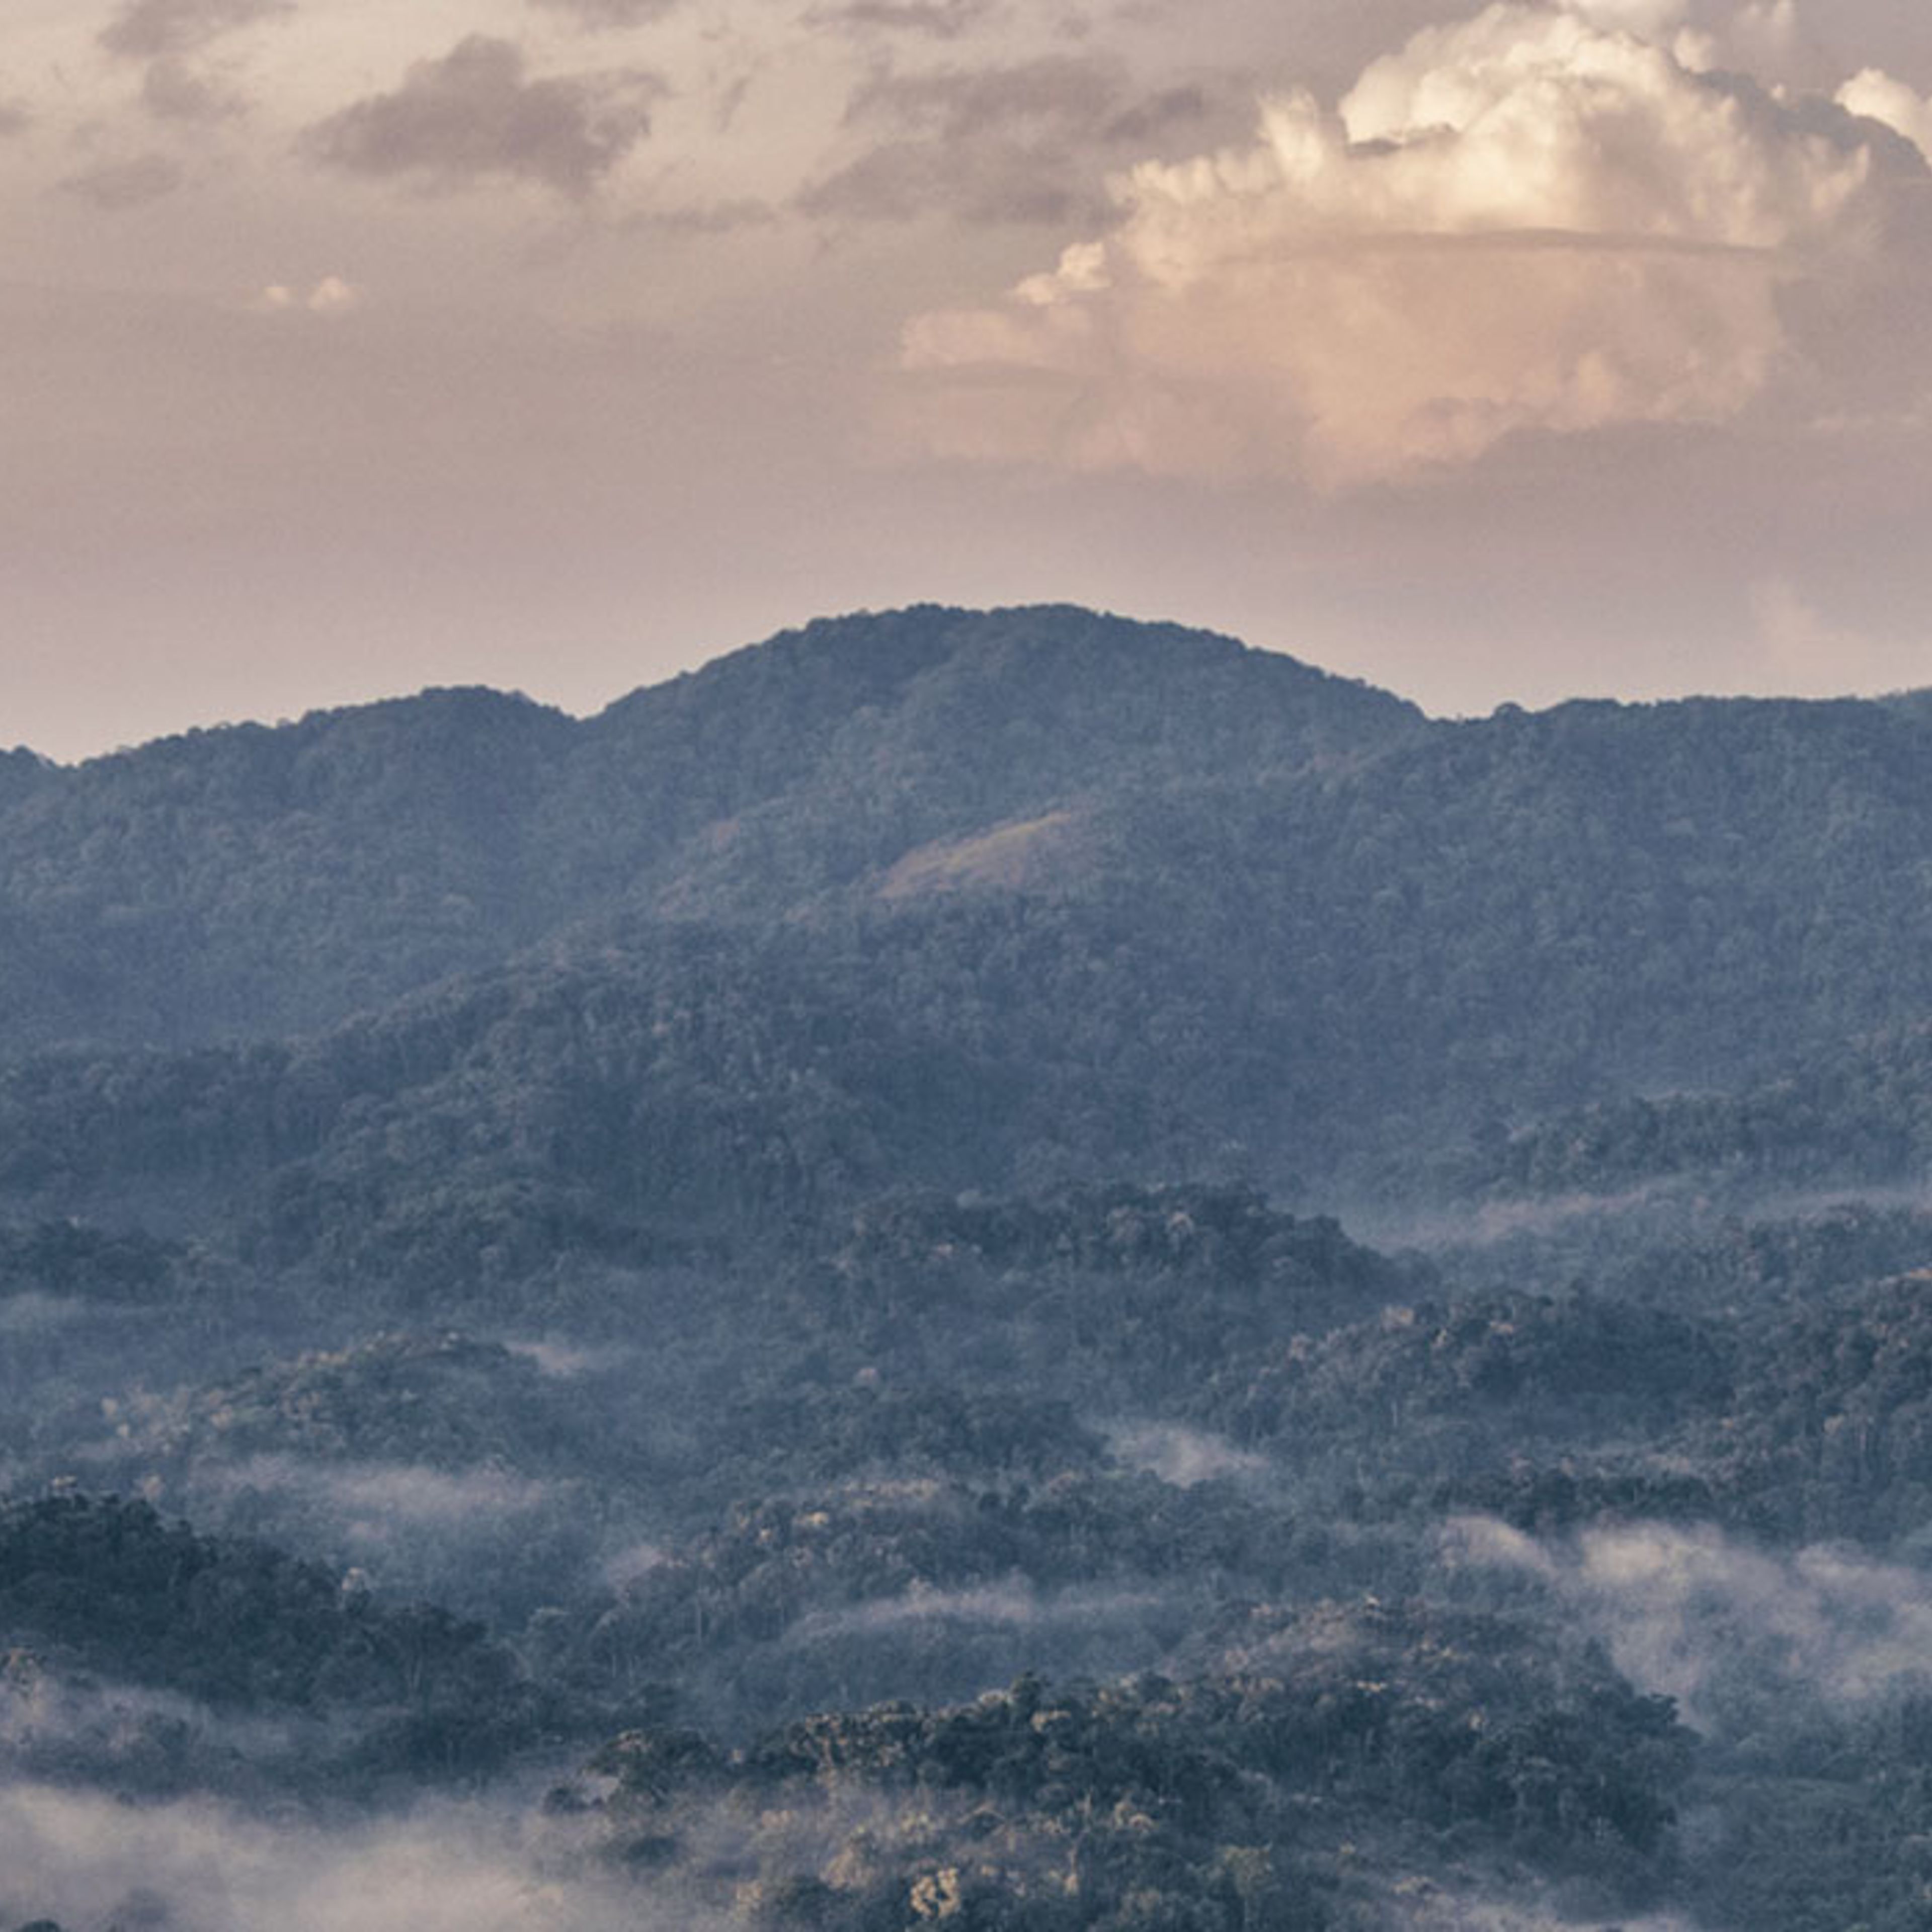 Nebbia mattutina nella foresta pluviale del Ruanda